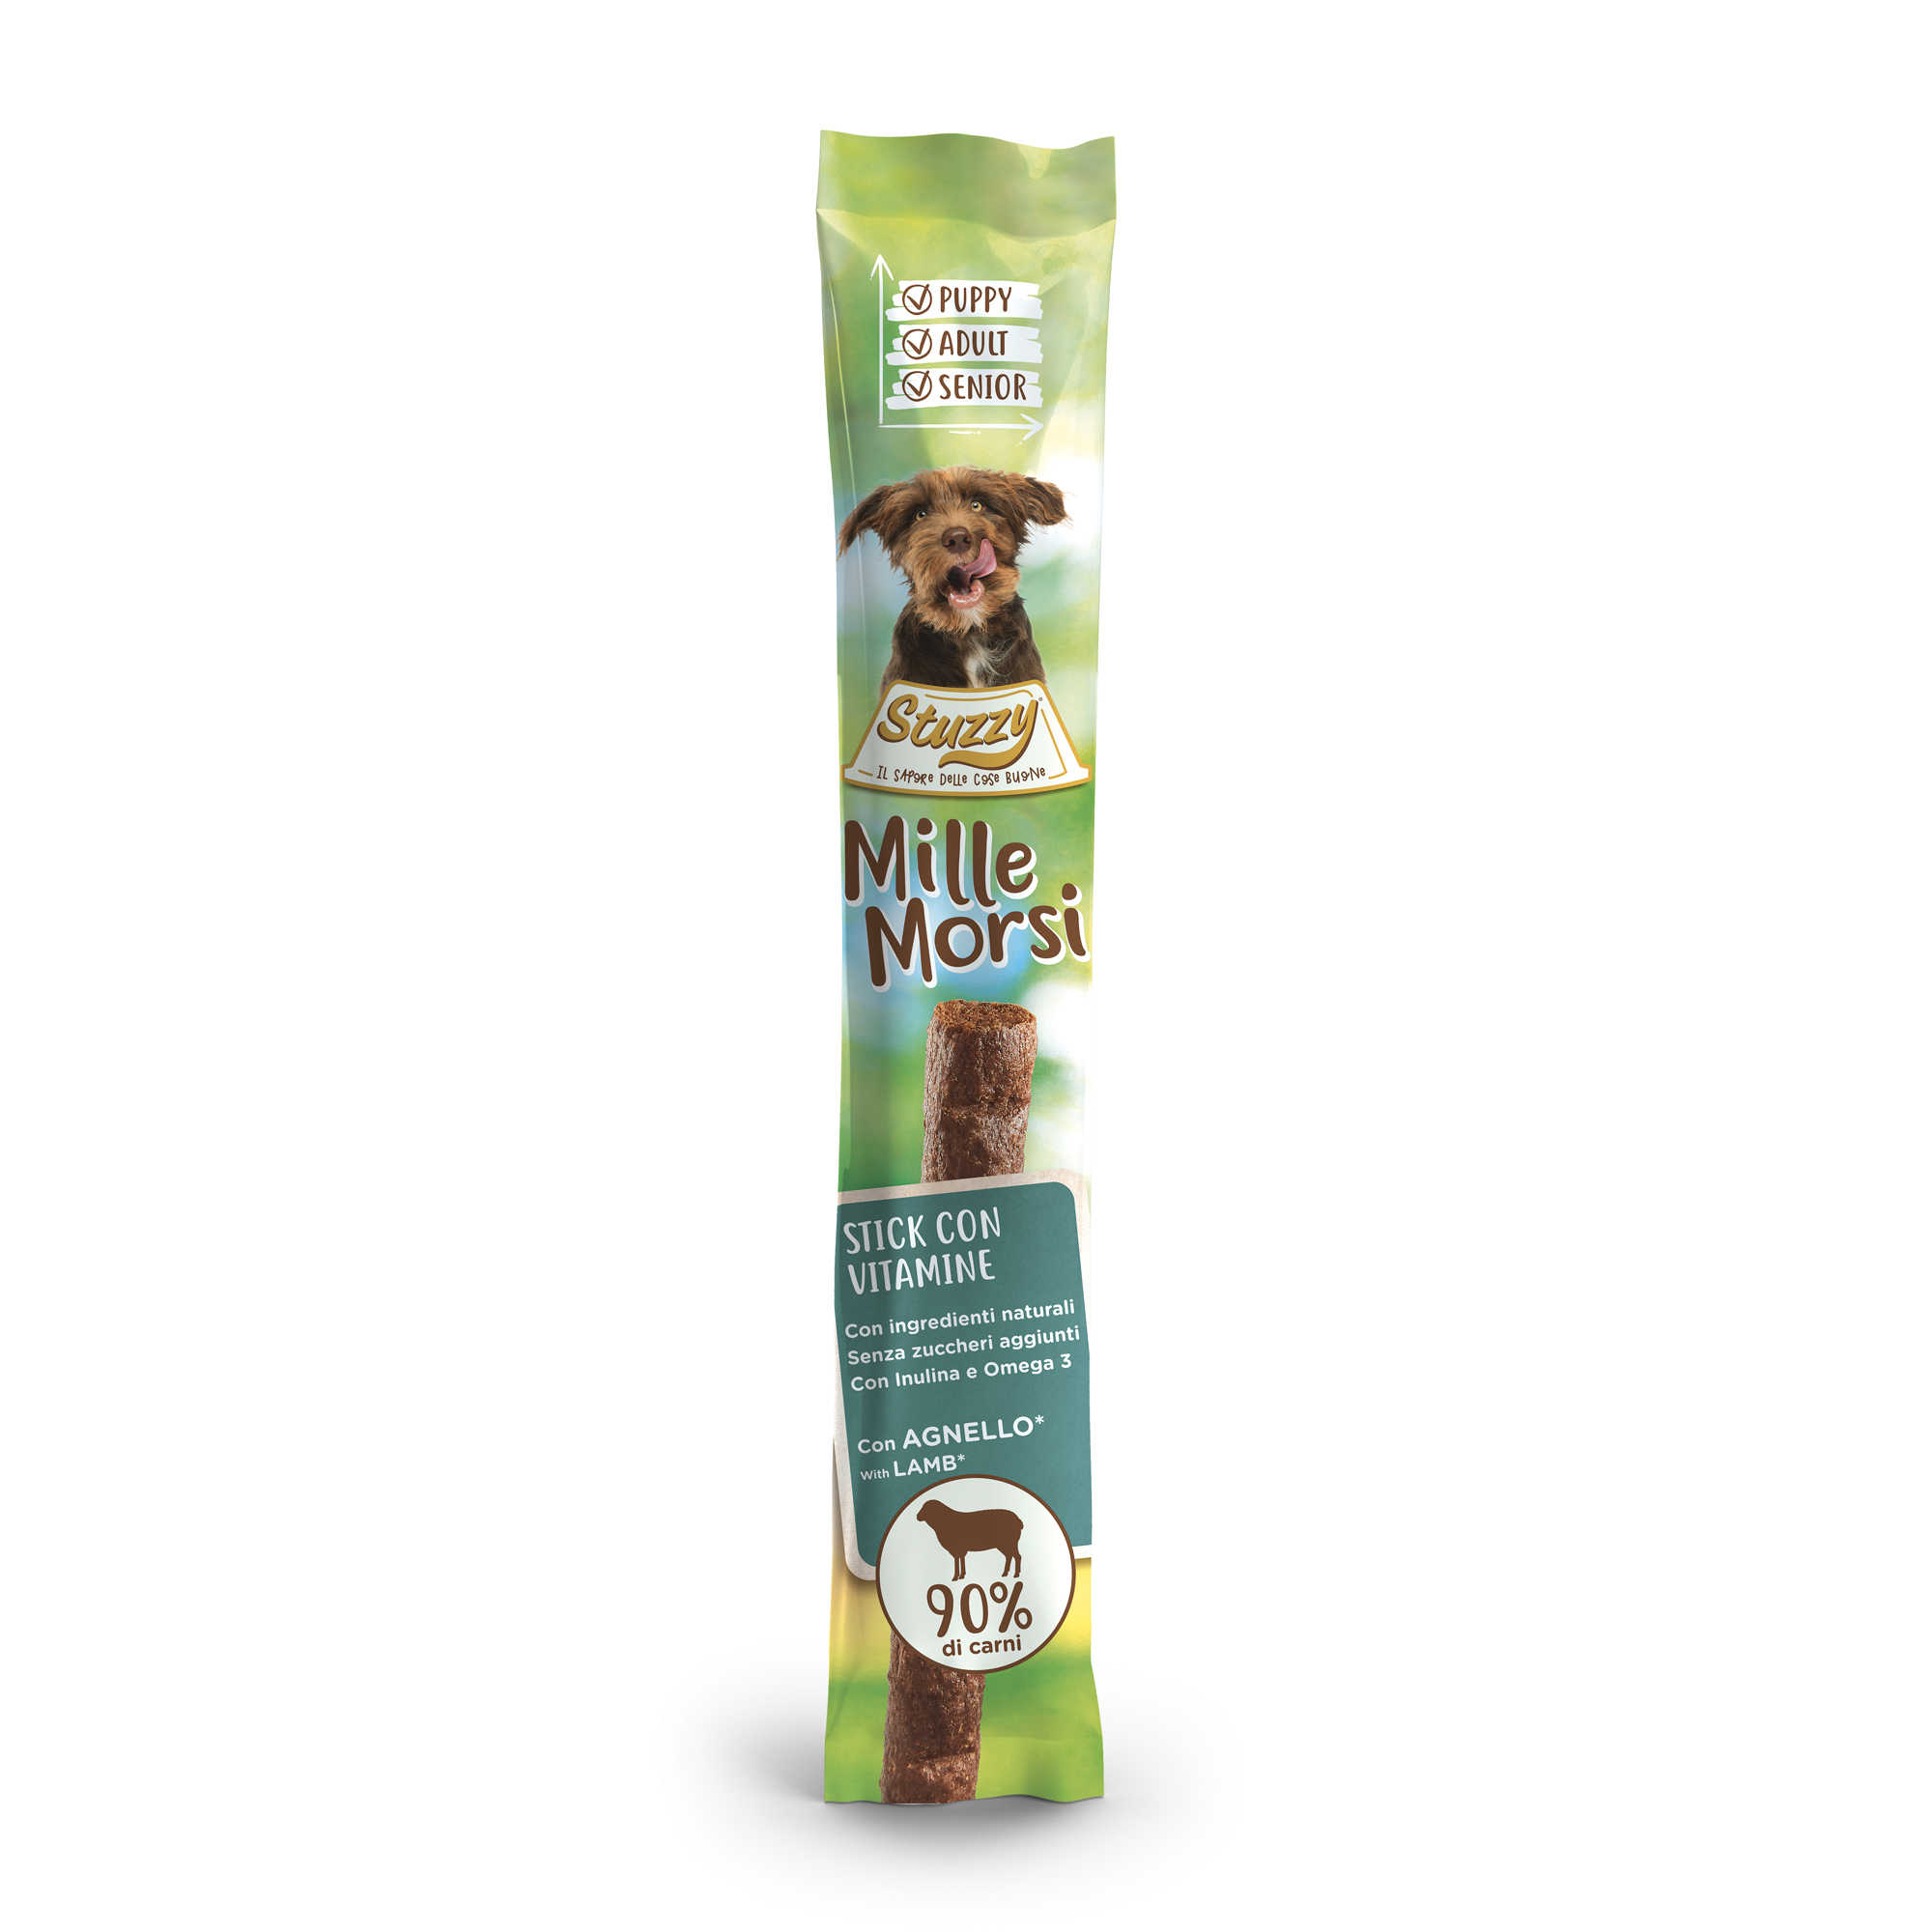 STUZZY Mille Morsi Sticks con vitaminas para perros